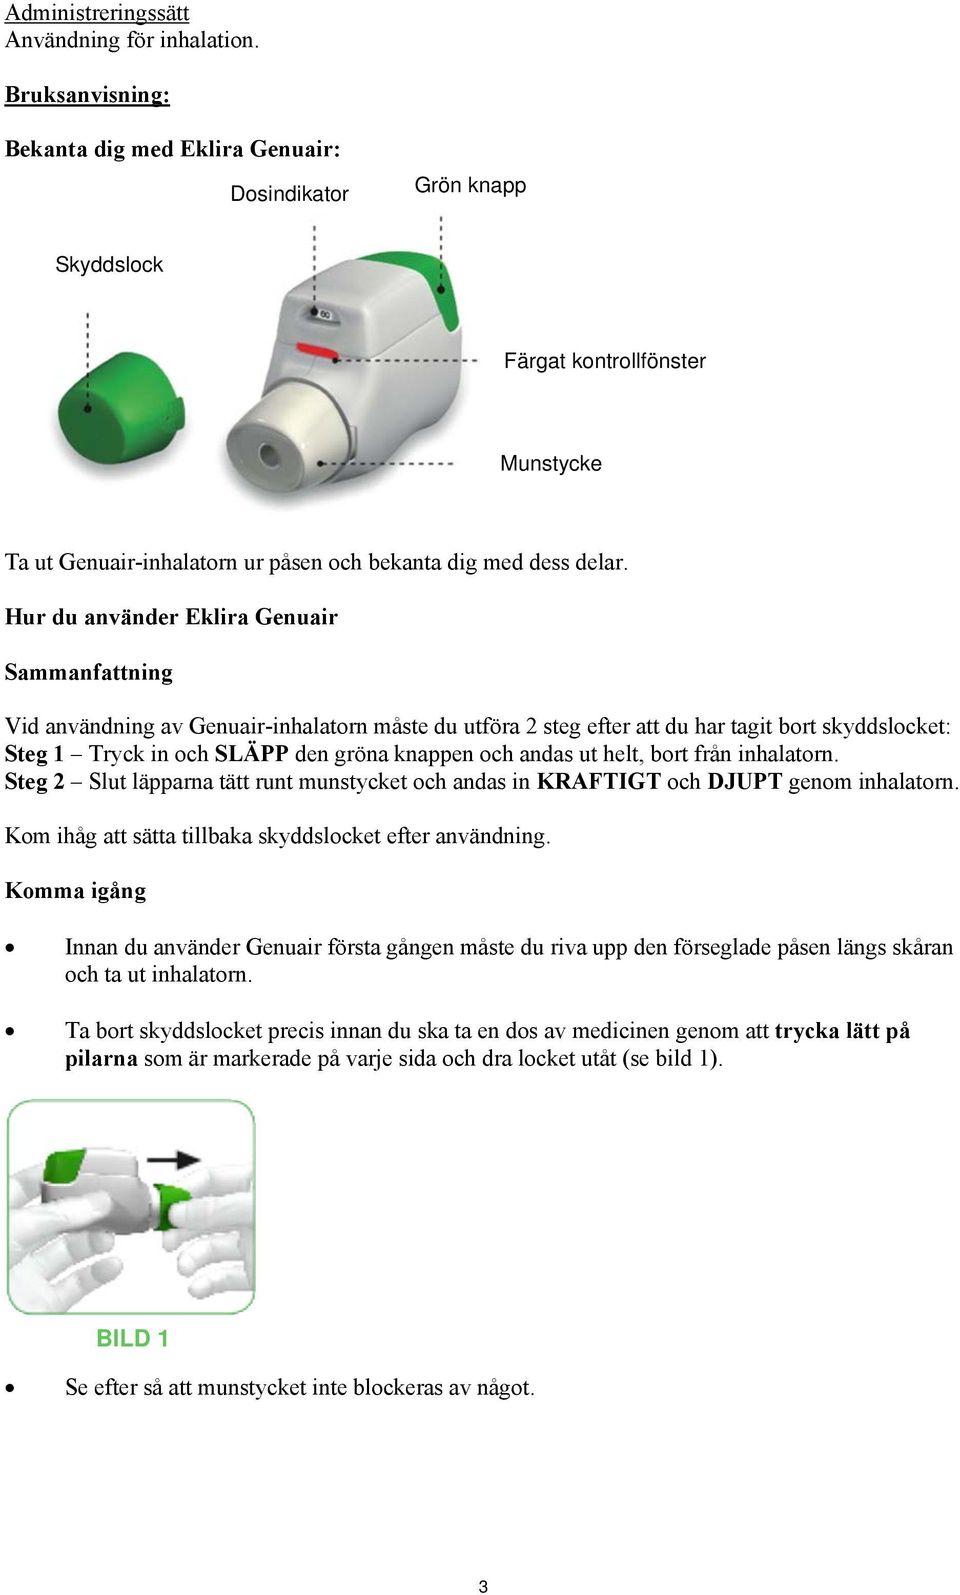 Hur du använder Eklira Genuair Sammanfattning Vid användning av Genuair-inhalatorn måste du utföra 2 steg efter att du har tagit bort skyddslocket: Steg 1 Tryck in och SLÄPP den gröna knappen och